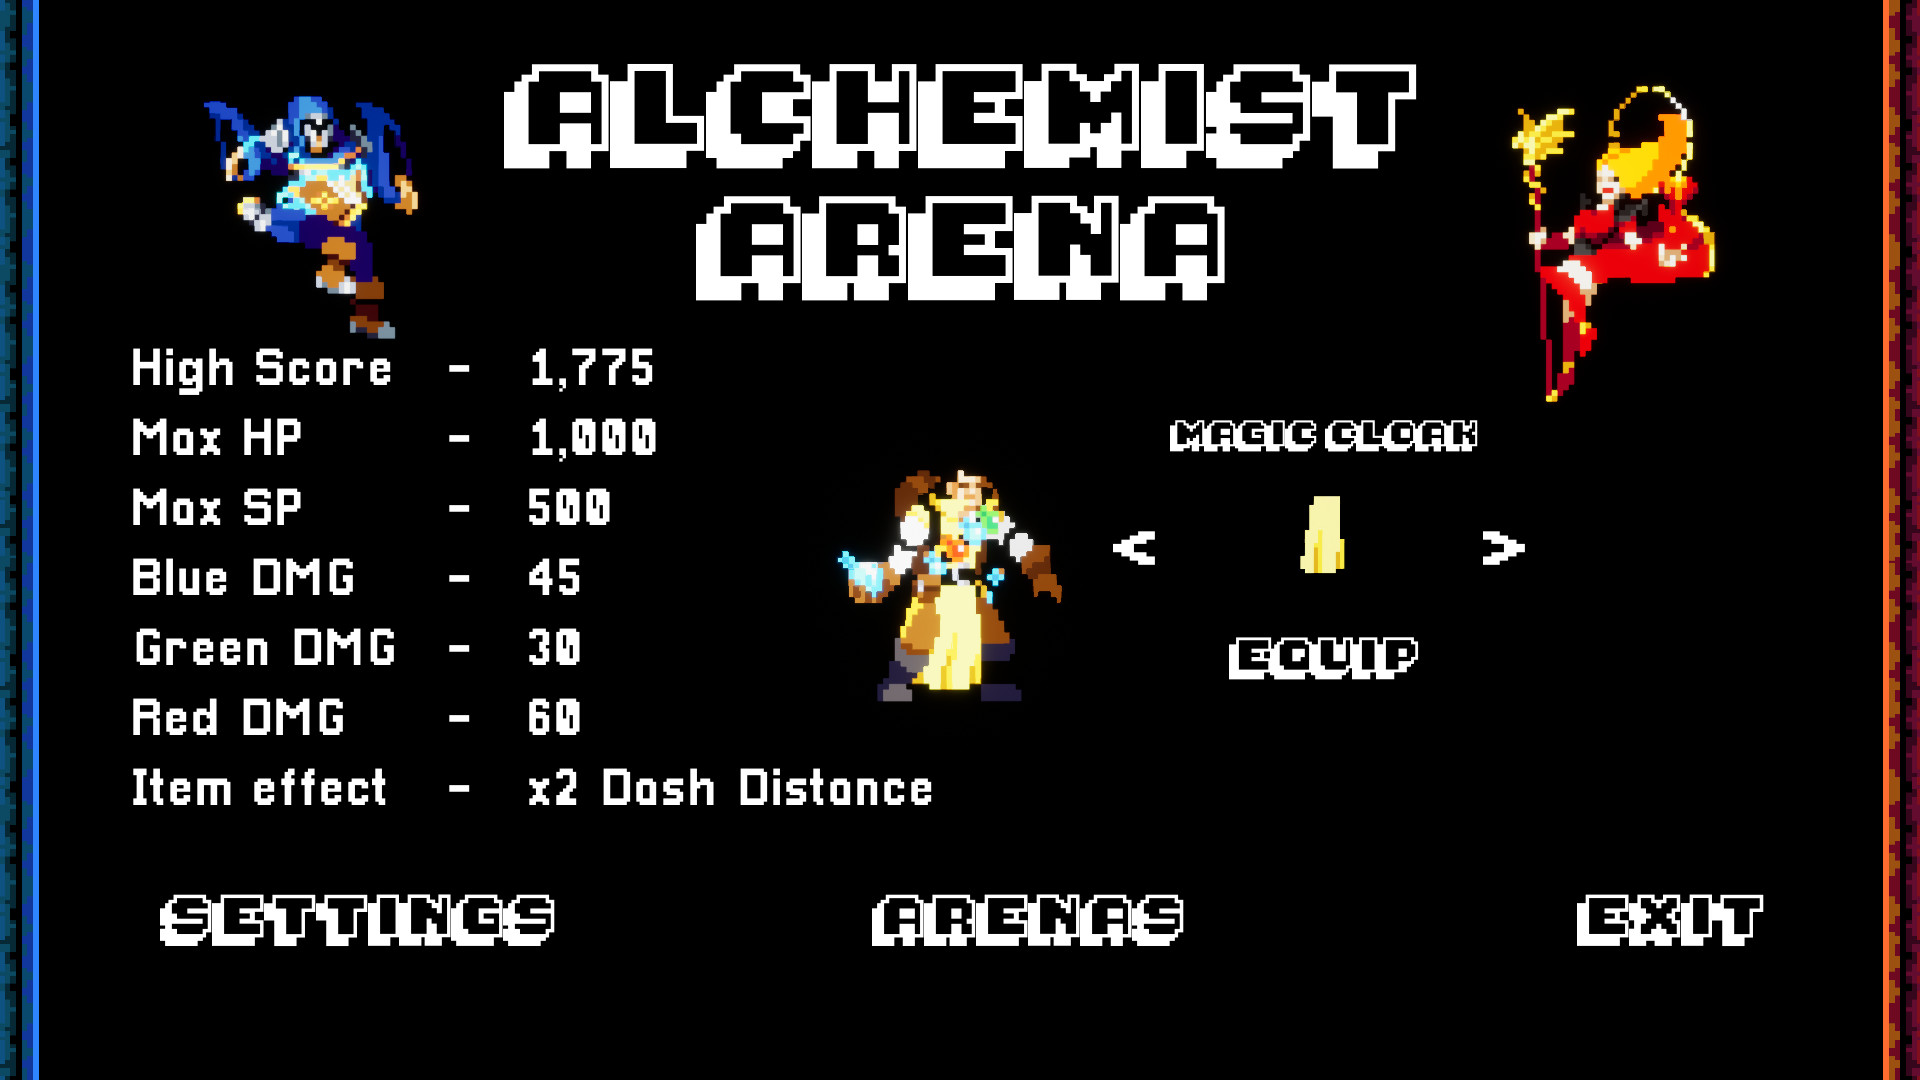 Alchemist Arena Free Download